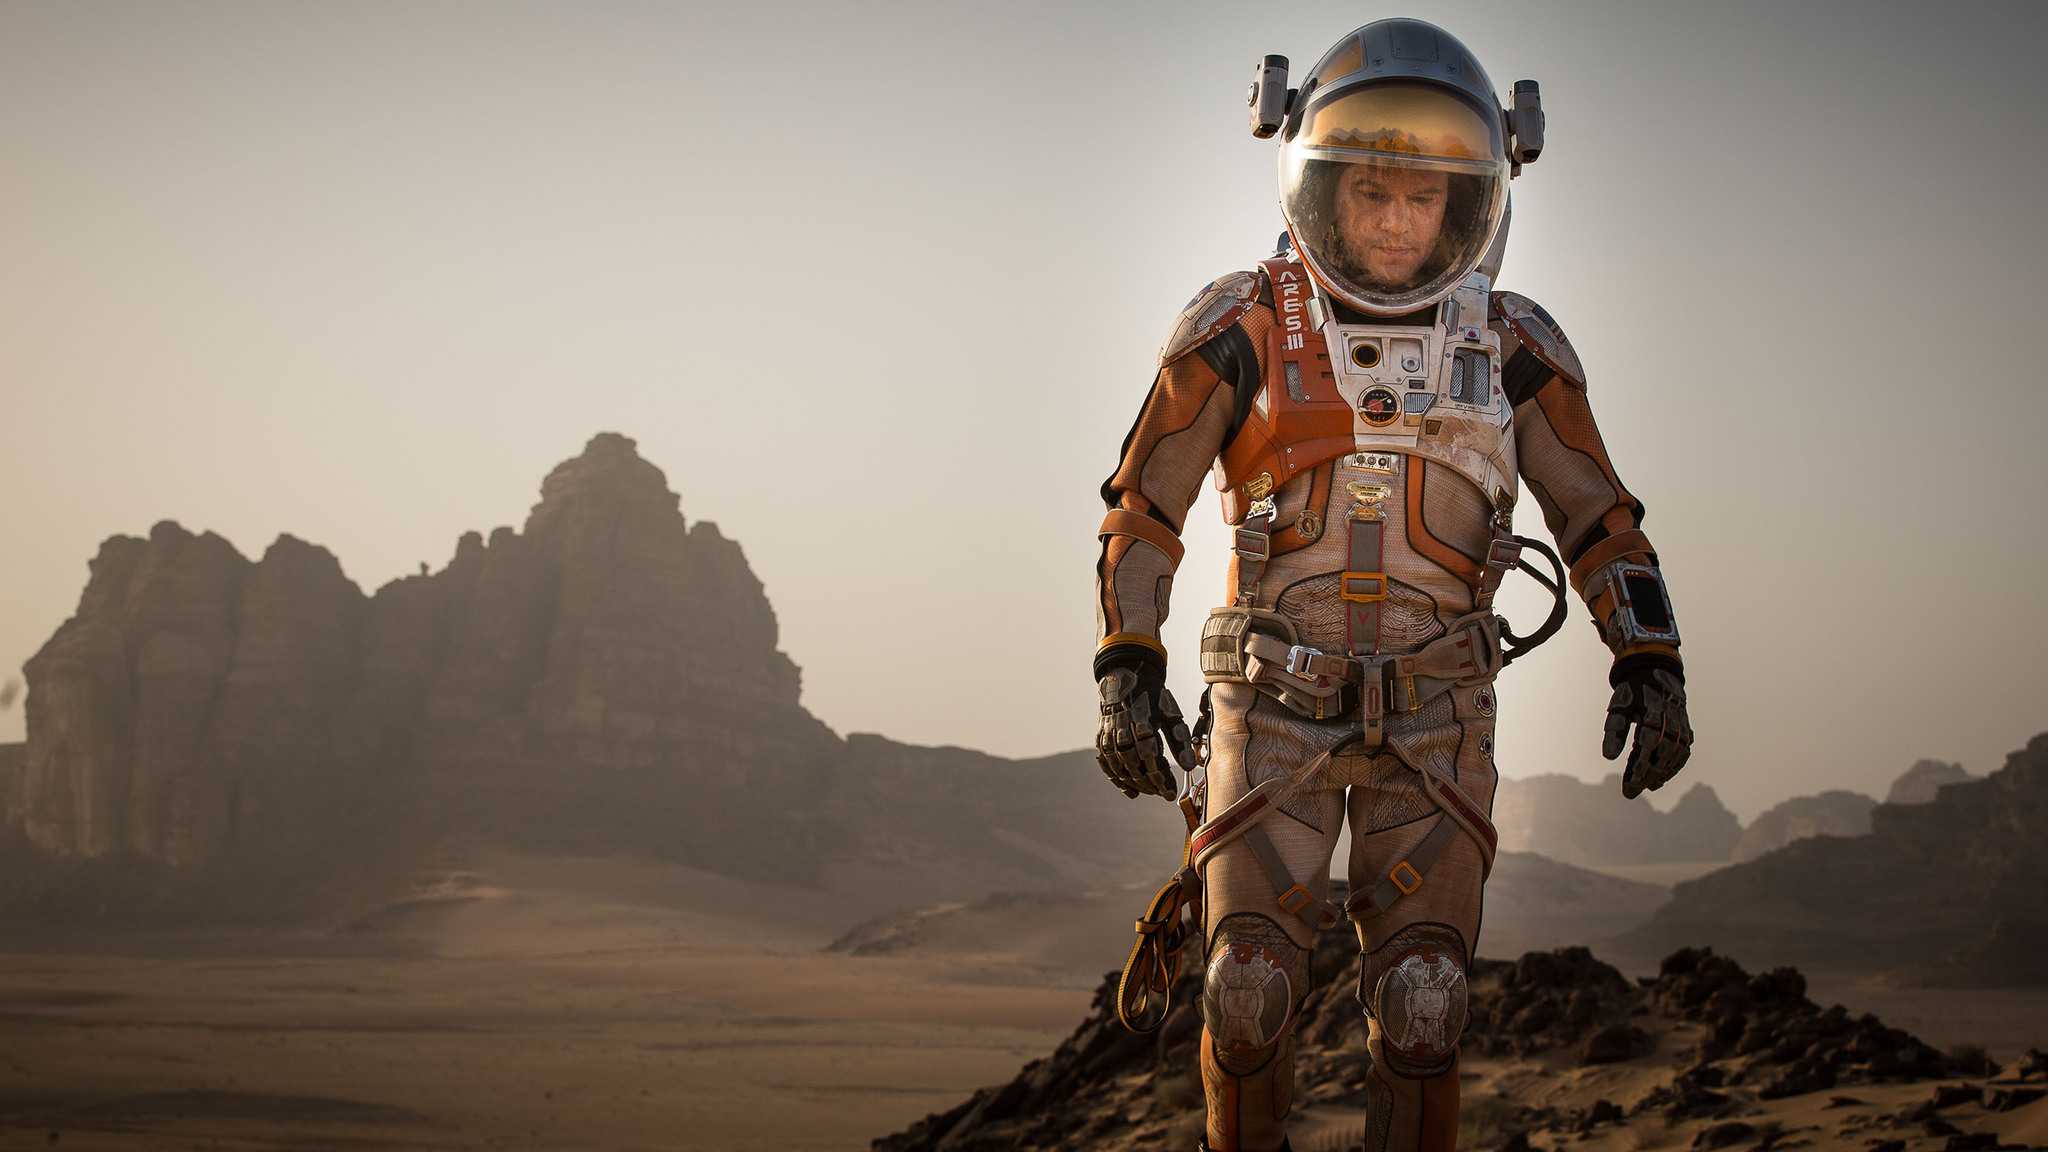 Ridley Scott's masterpiece The Martian starring Matt Damon triumphed among critics